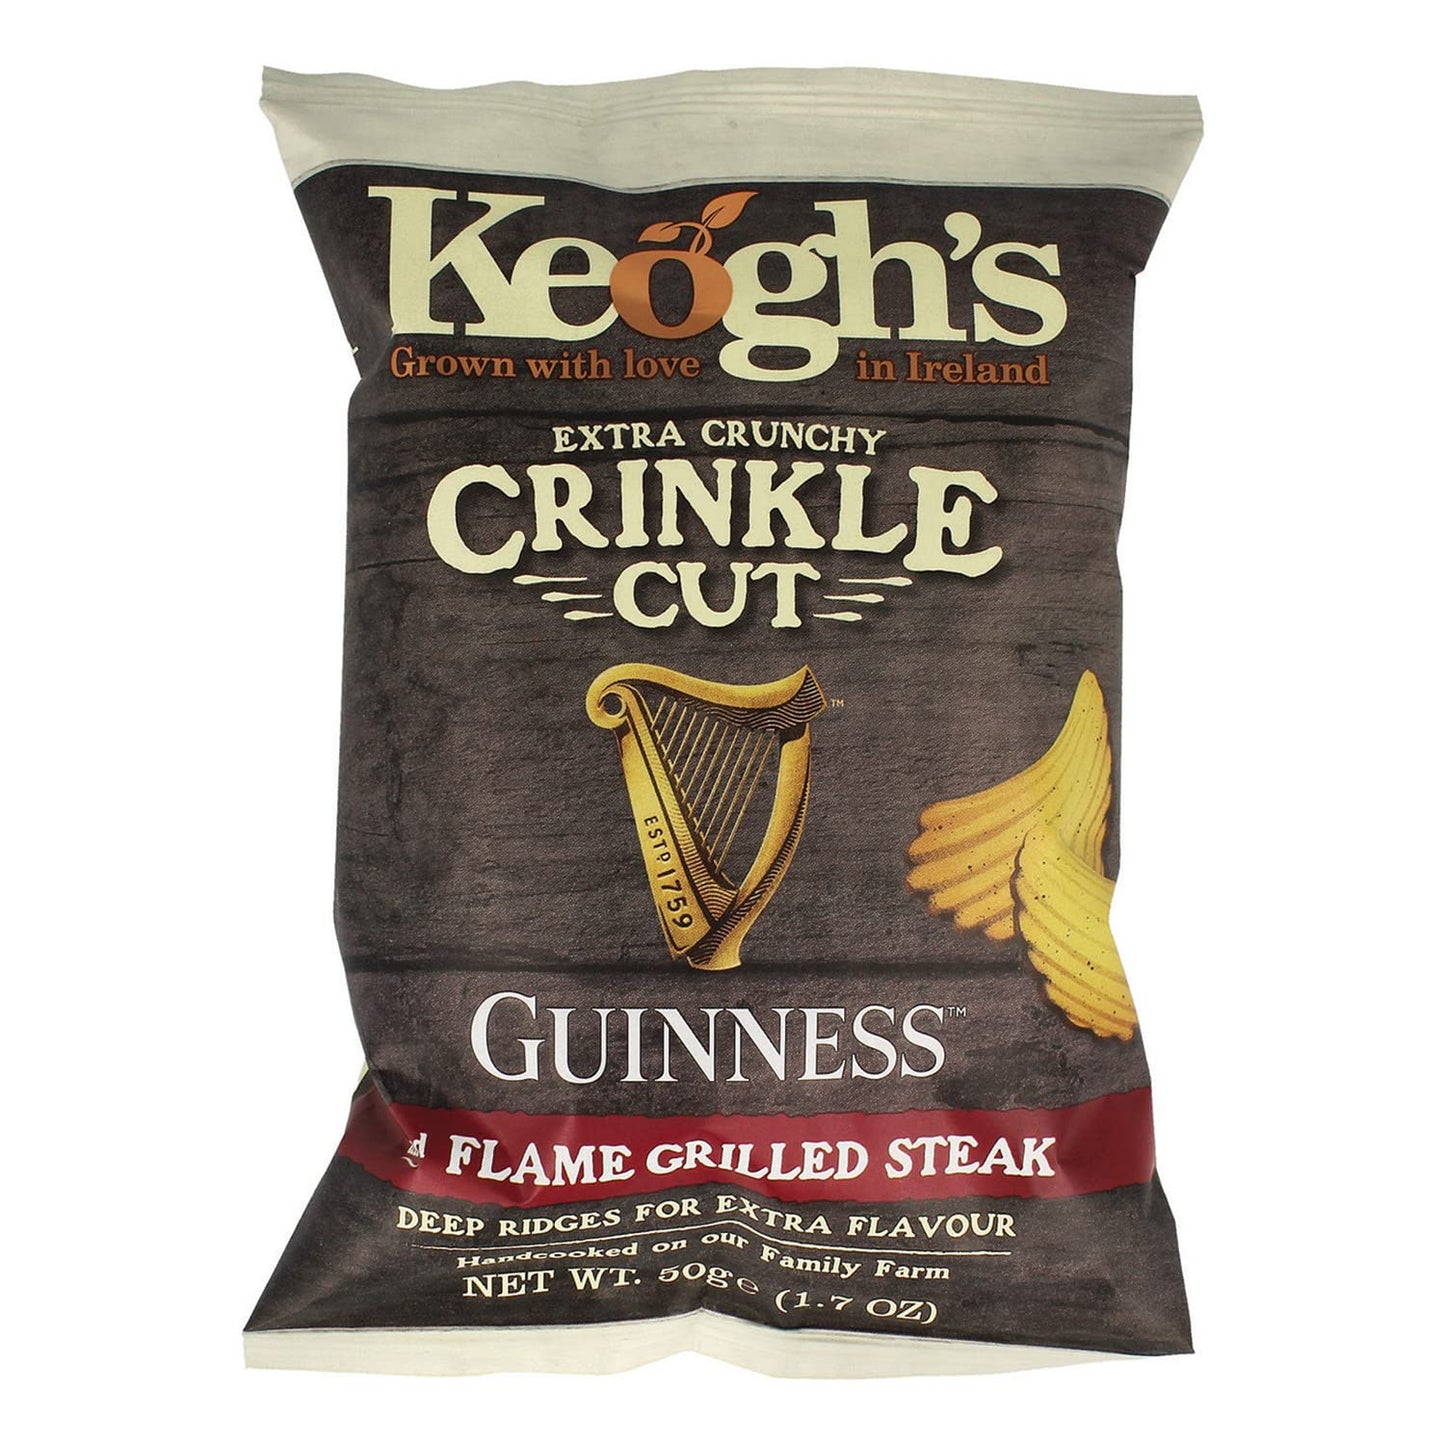 Keoghs Keoghs Crinkle Guinness & flamed Grilled steak 50g